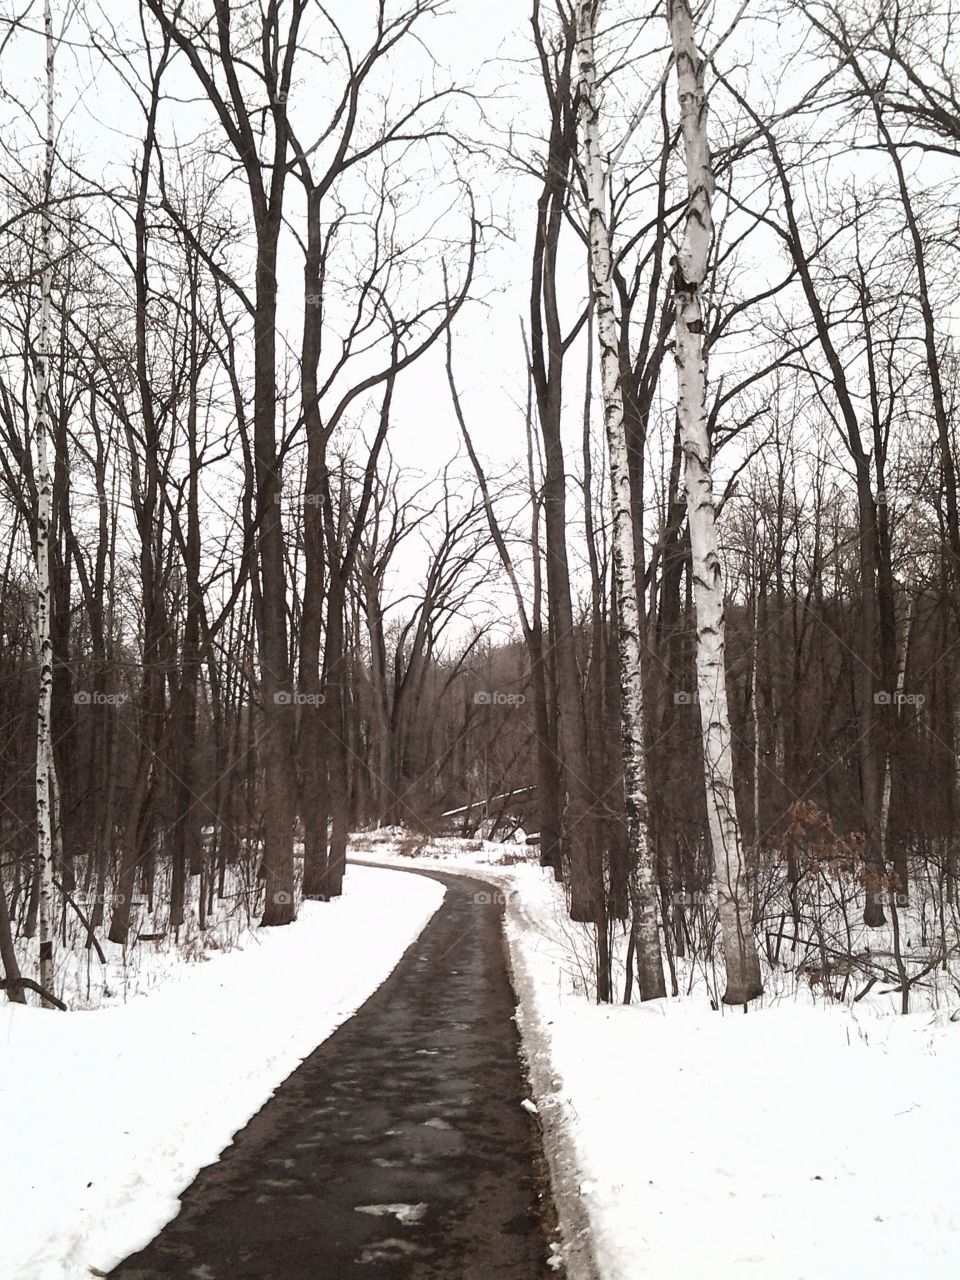 A Brisk walk through a winter wonderland.